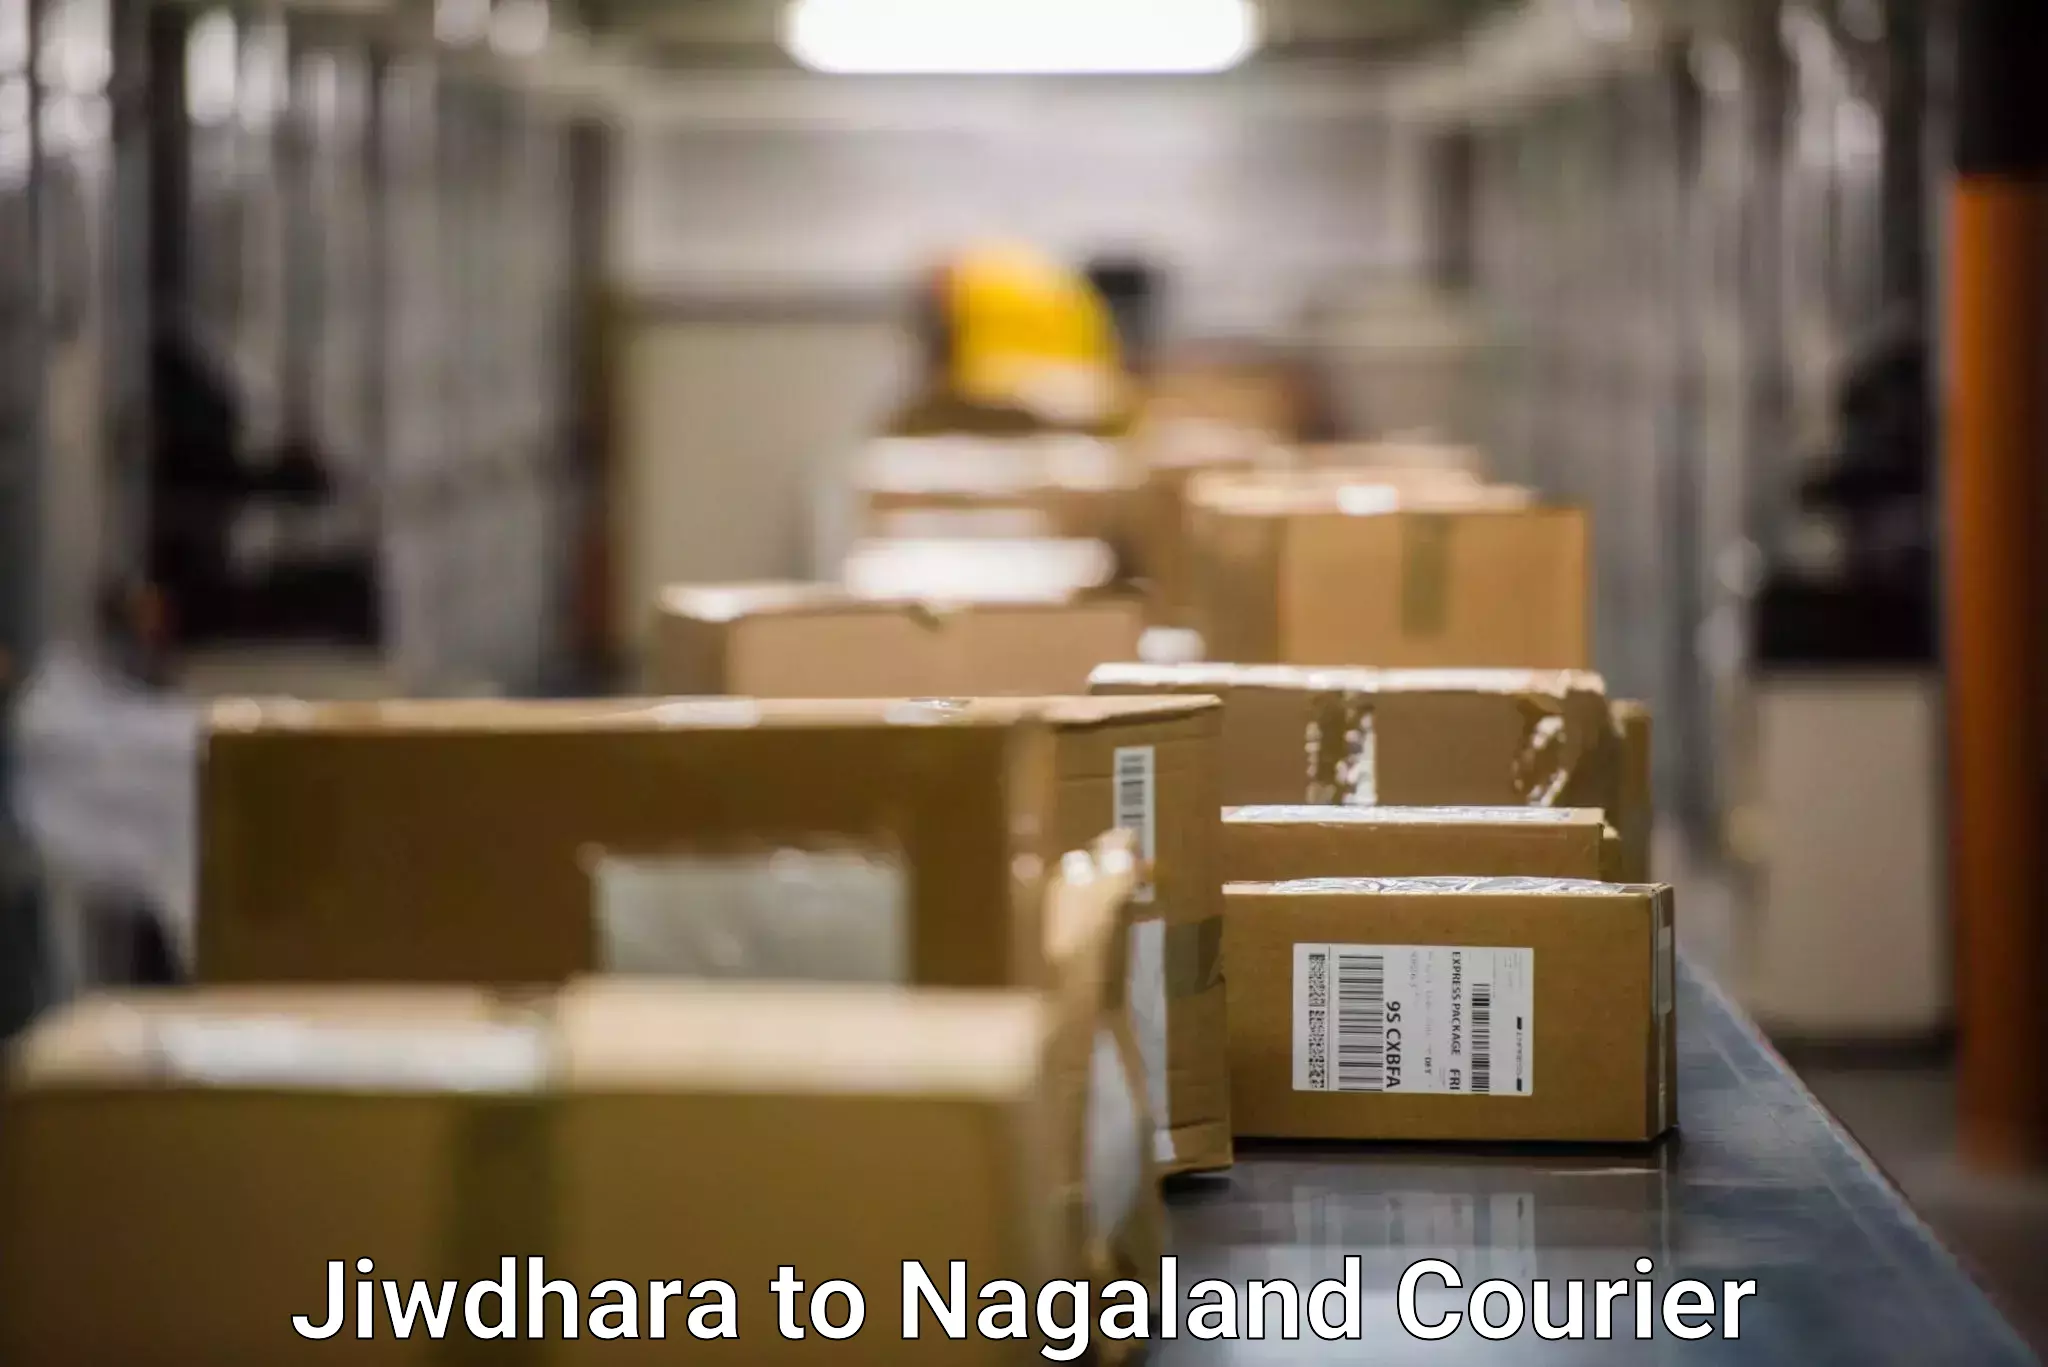 Cross-border shipping Jiwdhara to NIT Nagaland